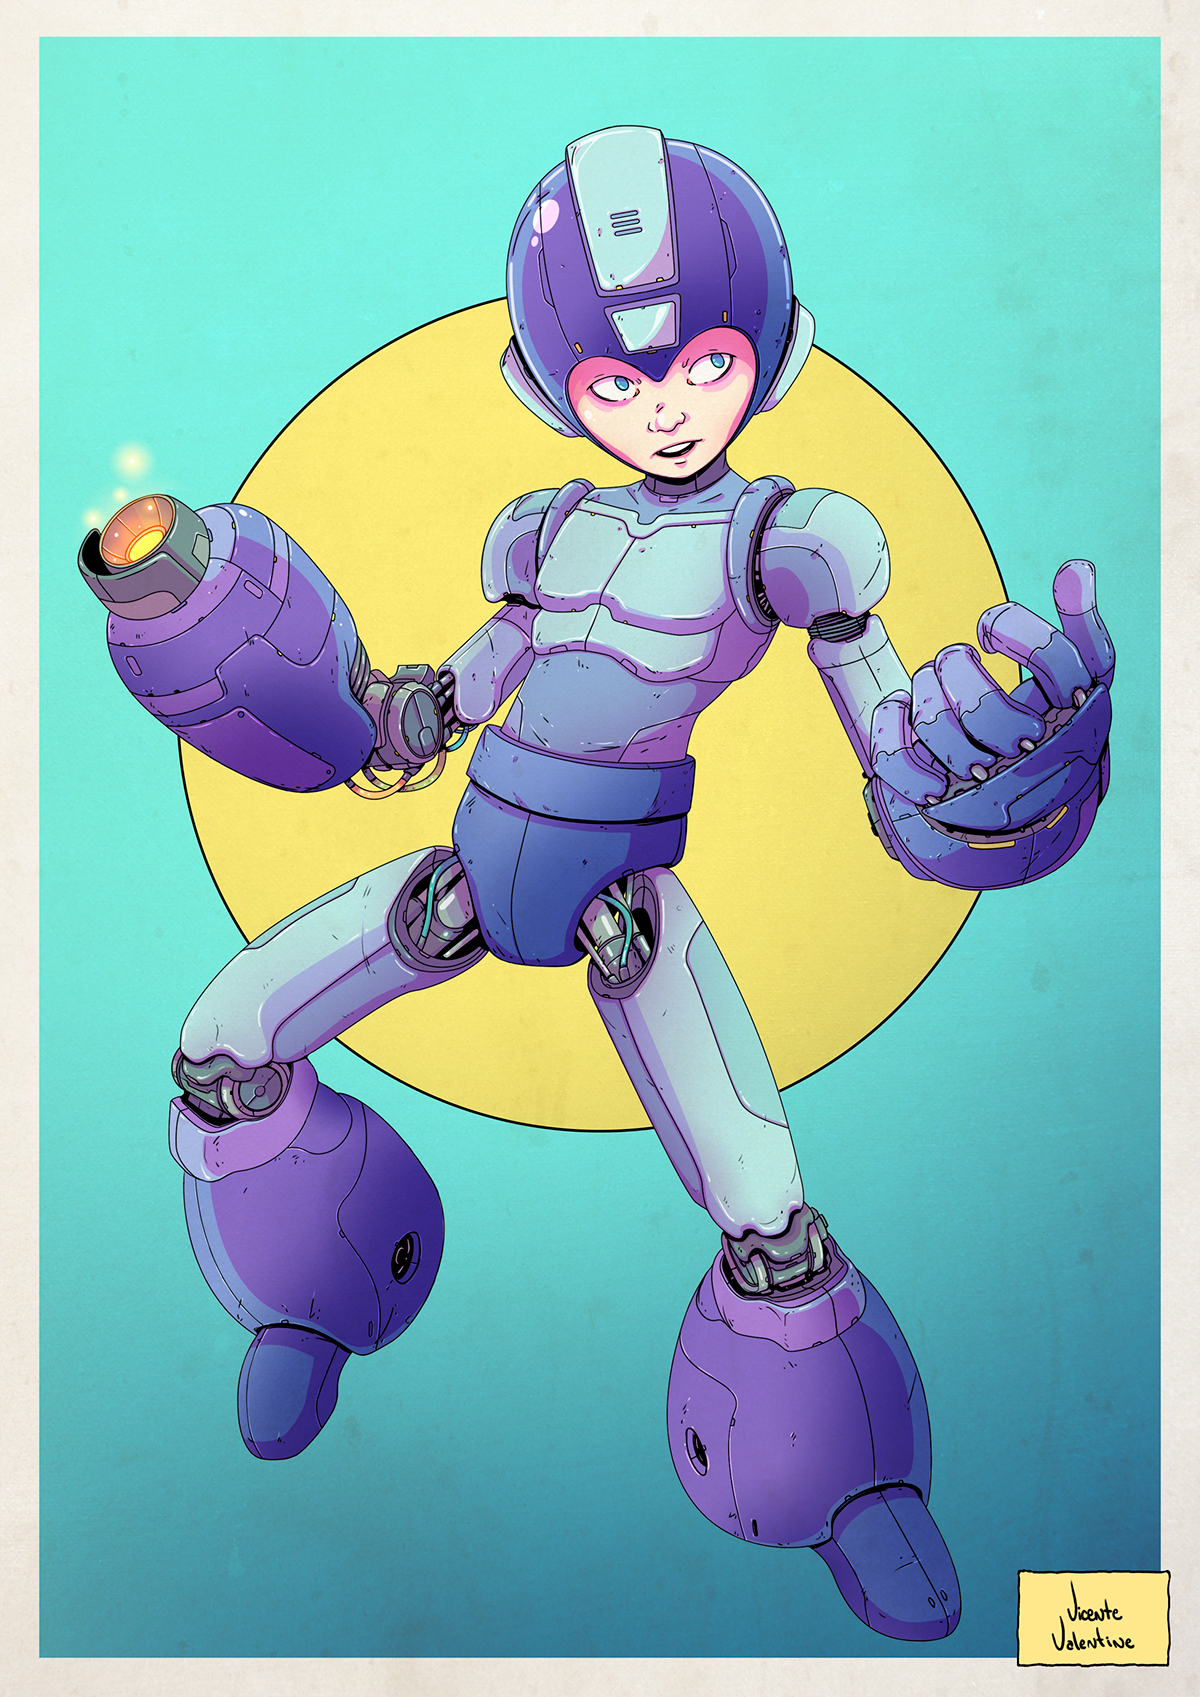 Mega Man rockman Classic snes capcom game redesign fanart robot android